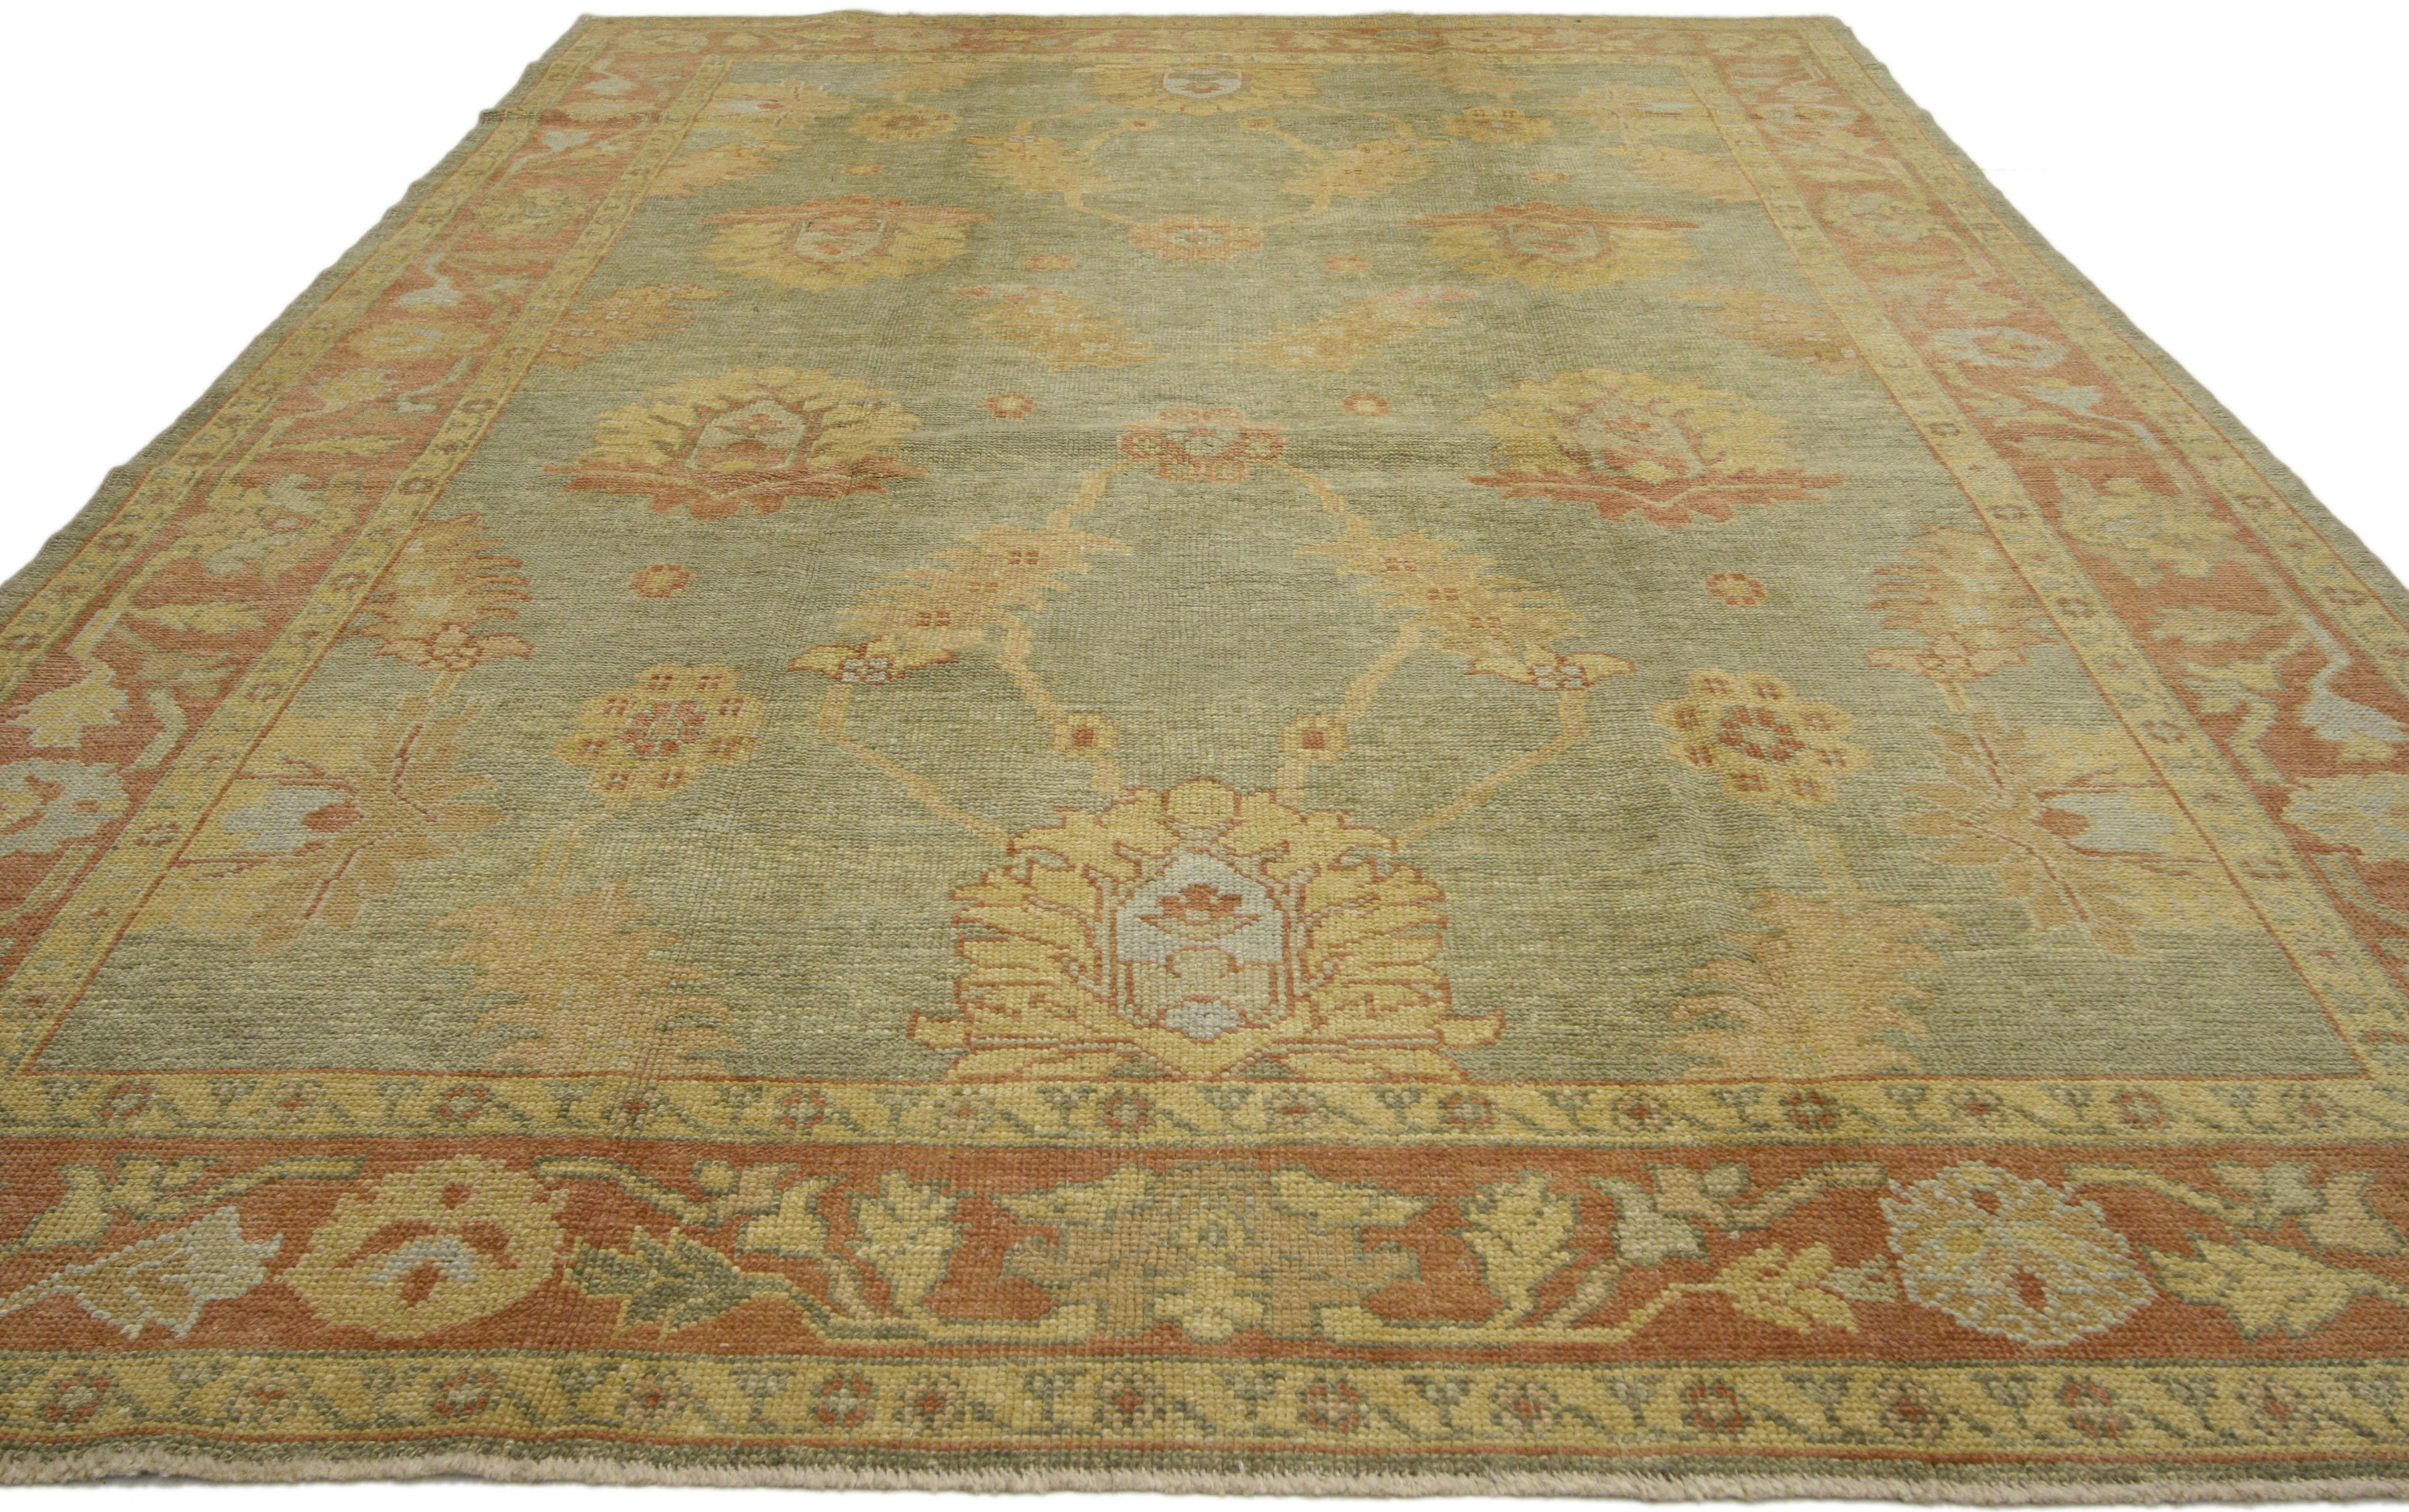 50594, nouveau tapis contemporain turc Oushak de style anglais. Ce tapis turc contemporain Oushak, en laine nouée à la main, présente un gracieux motif floral all-over sur un fond vert sauge abrasé. Un éventail de motifs botaniques décore le champ